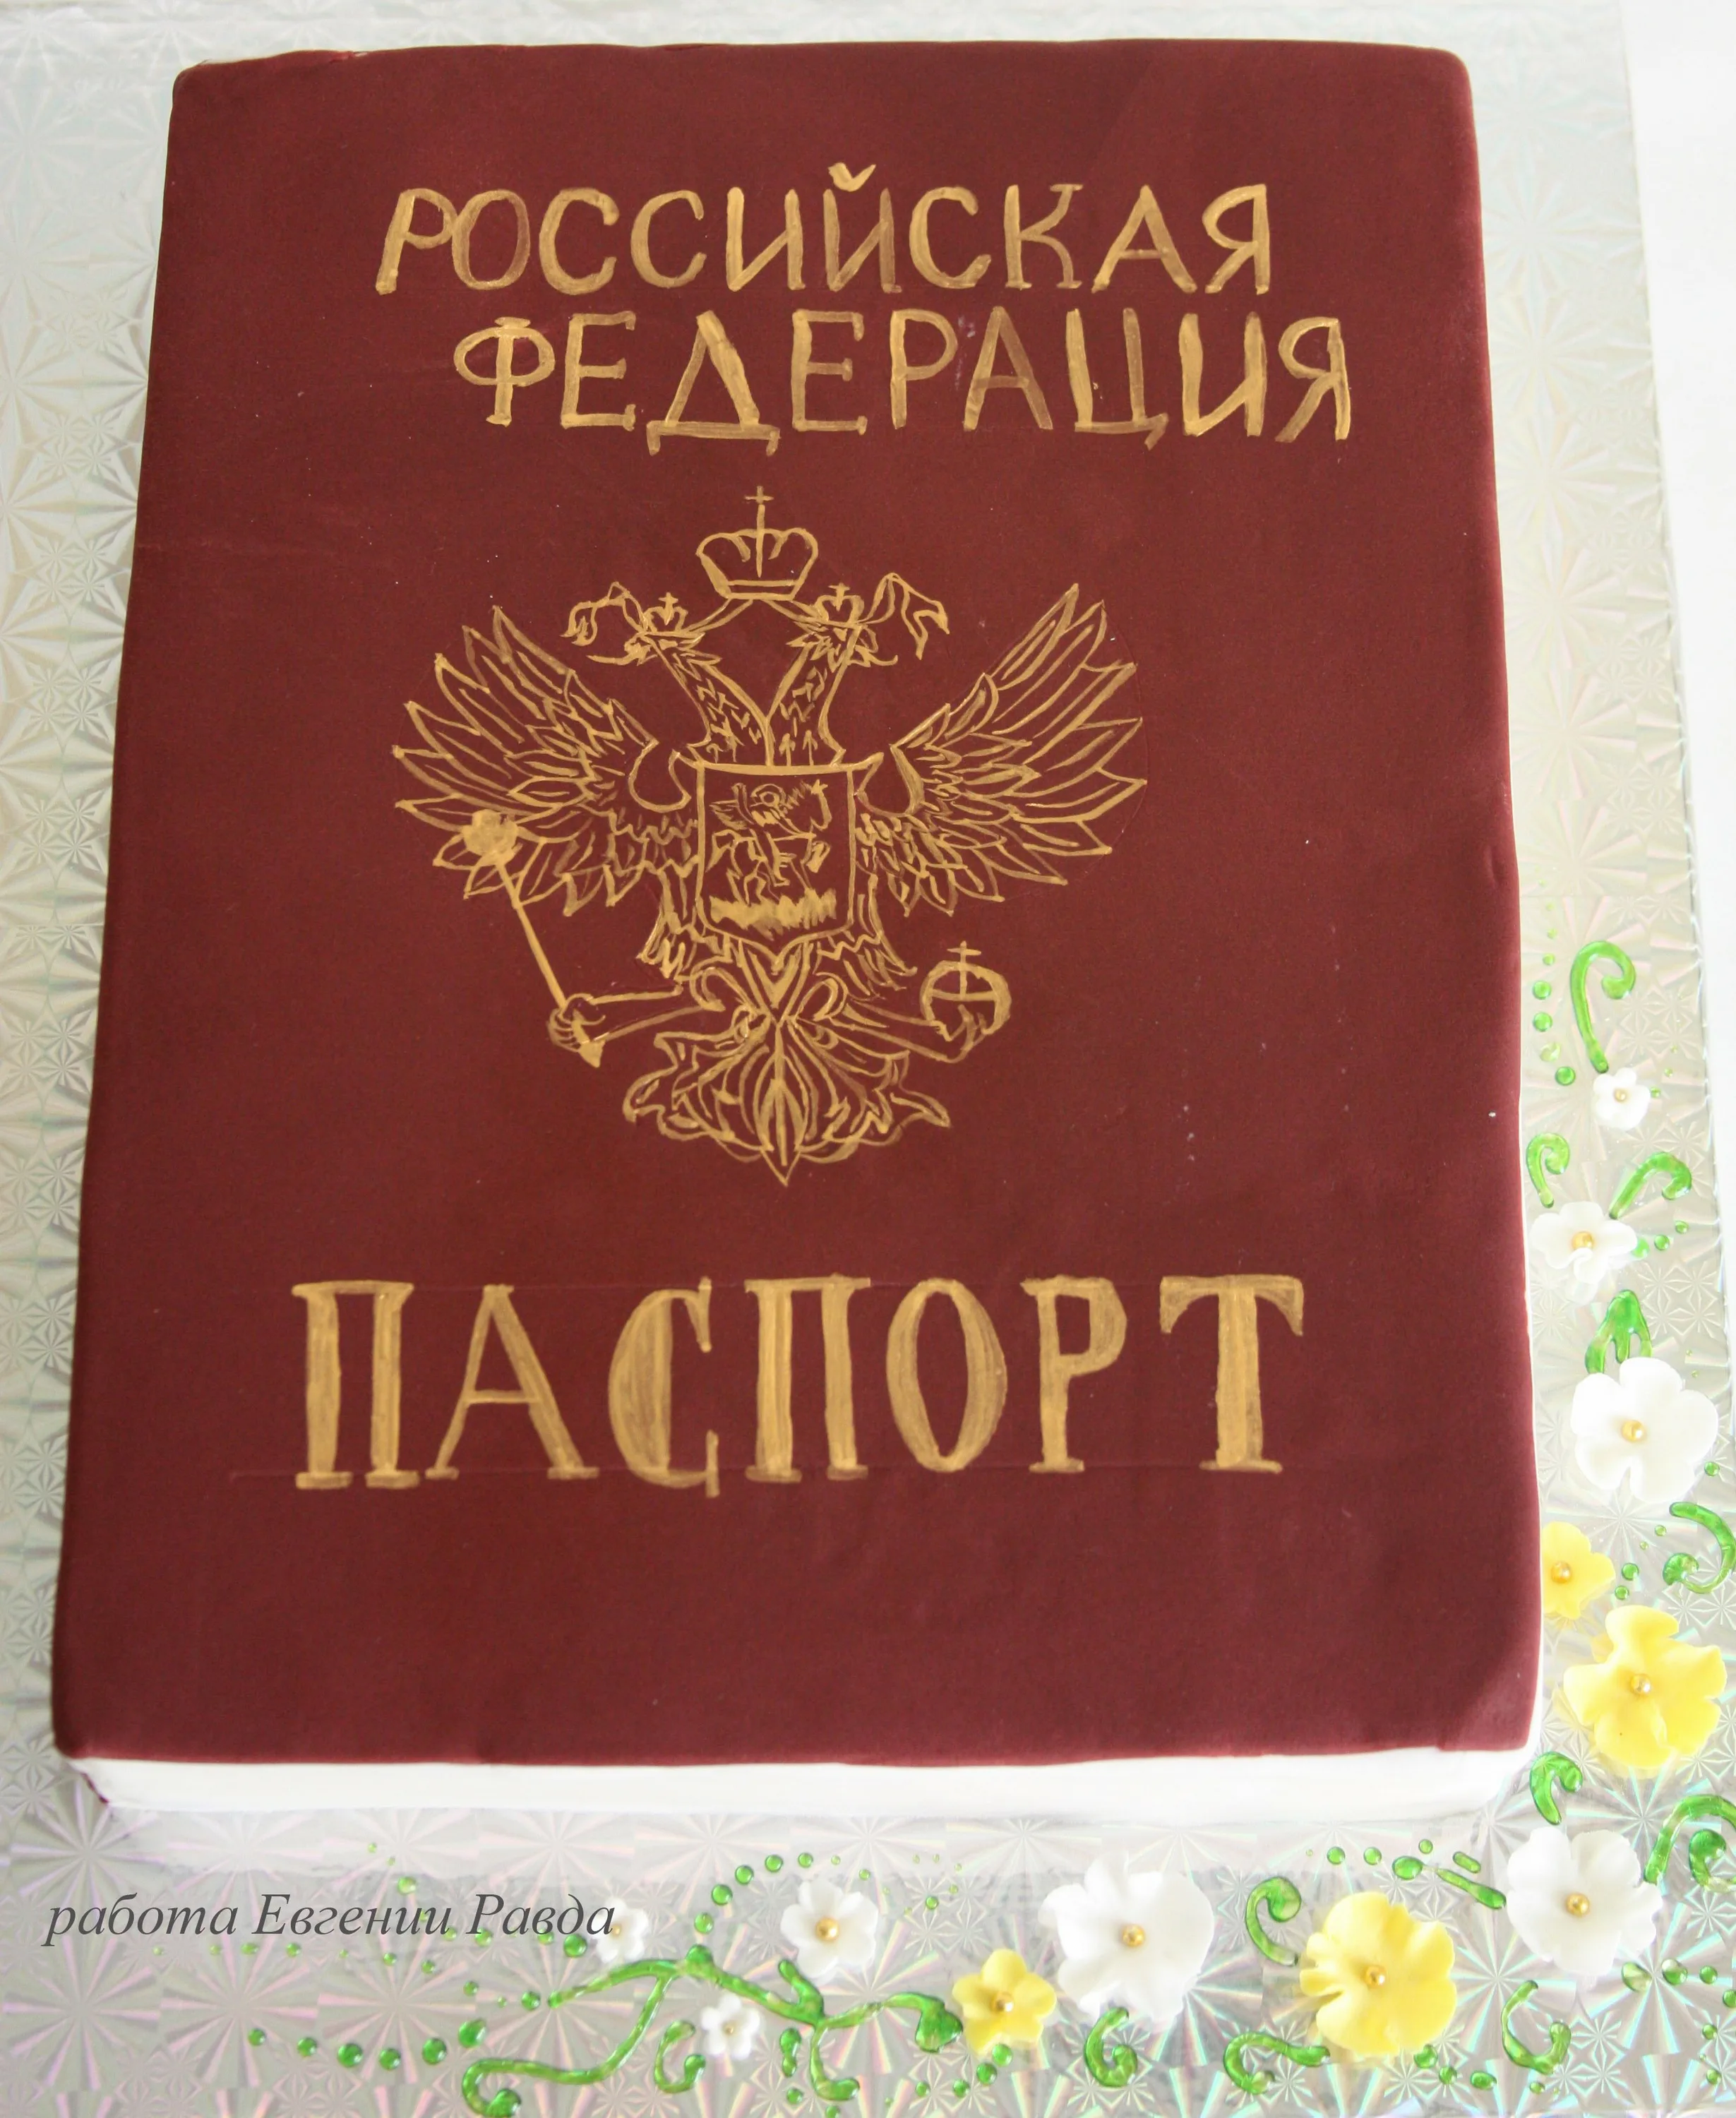 Фото Поздравление с получением паспорта в 14 лет девочке #58